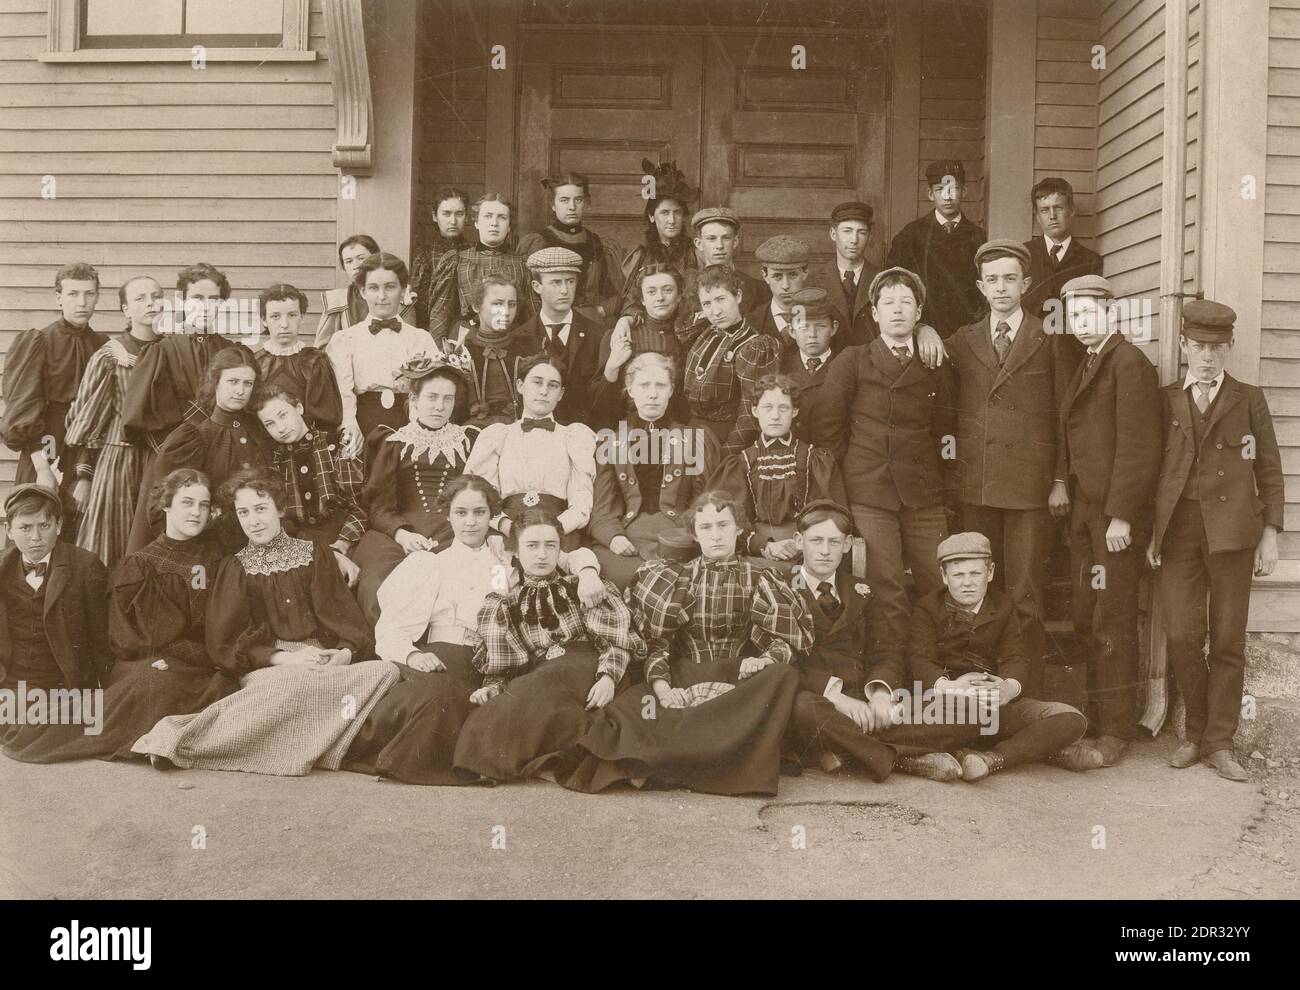 Fotografía antigua c1897, grupo de estudiantes de secundaria en Massachusetts. El maestro está en la fila superior, en el centro, con un sombrero de lujo. Foto de la Sra. L.M. Mitchell de Beverly, MA. FUENTE: FOTOGRAFÍA ORIGINAL Foto de stock